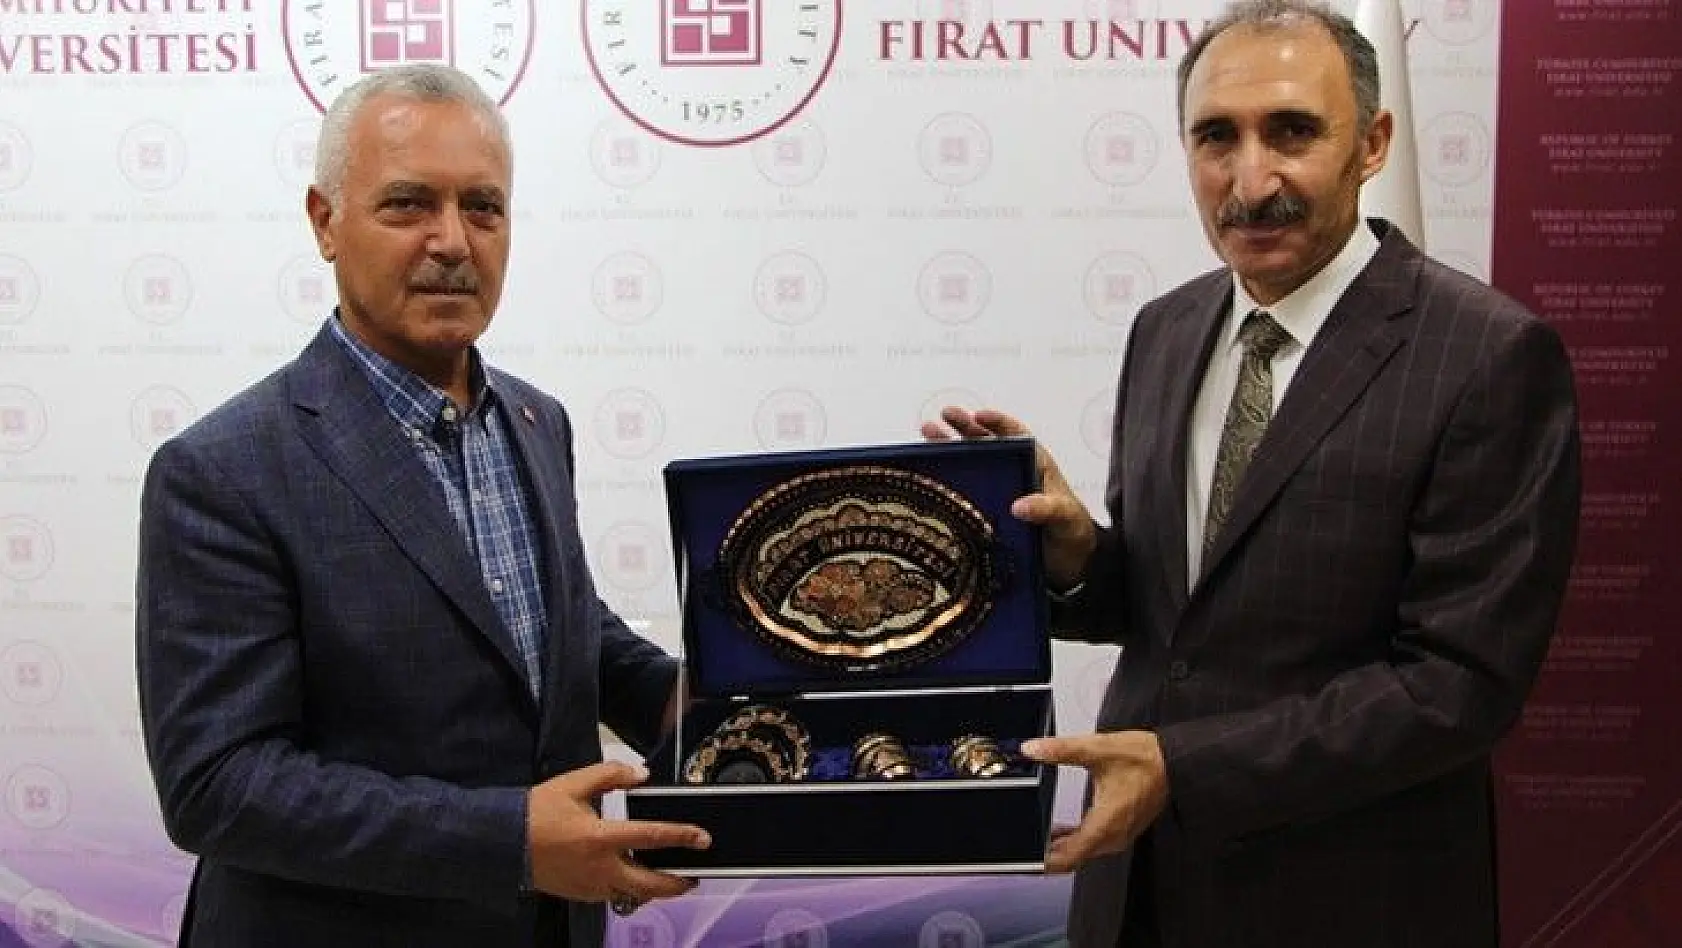 Milletvekili Mustafa Ataş: 'FIRAT üniversitesi Bölgeye Ciddi Katkılar Sağlıyor'